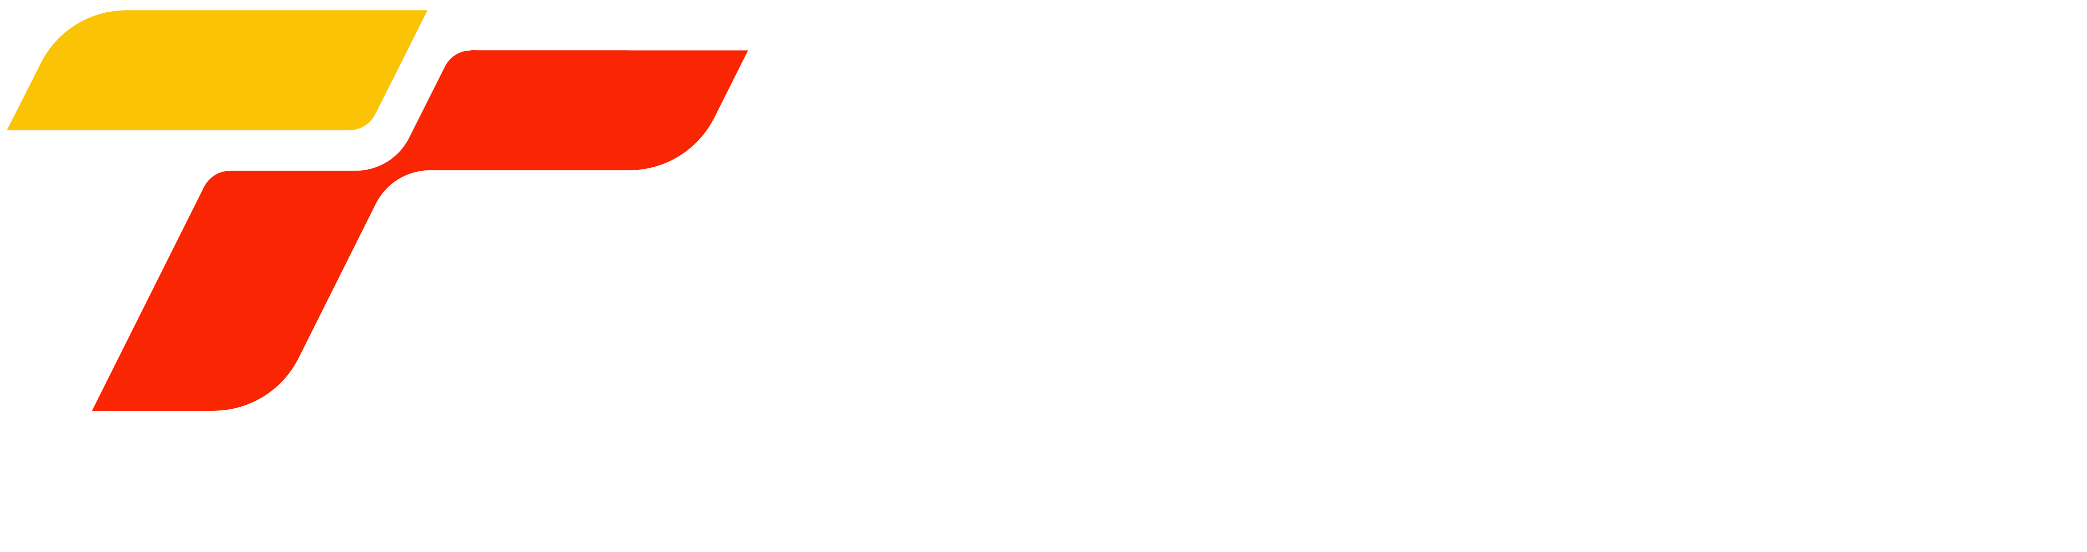 Technatio